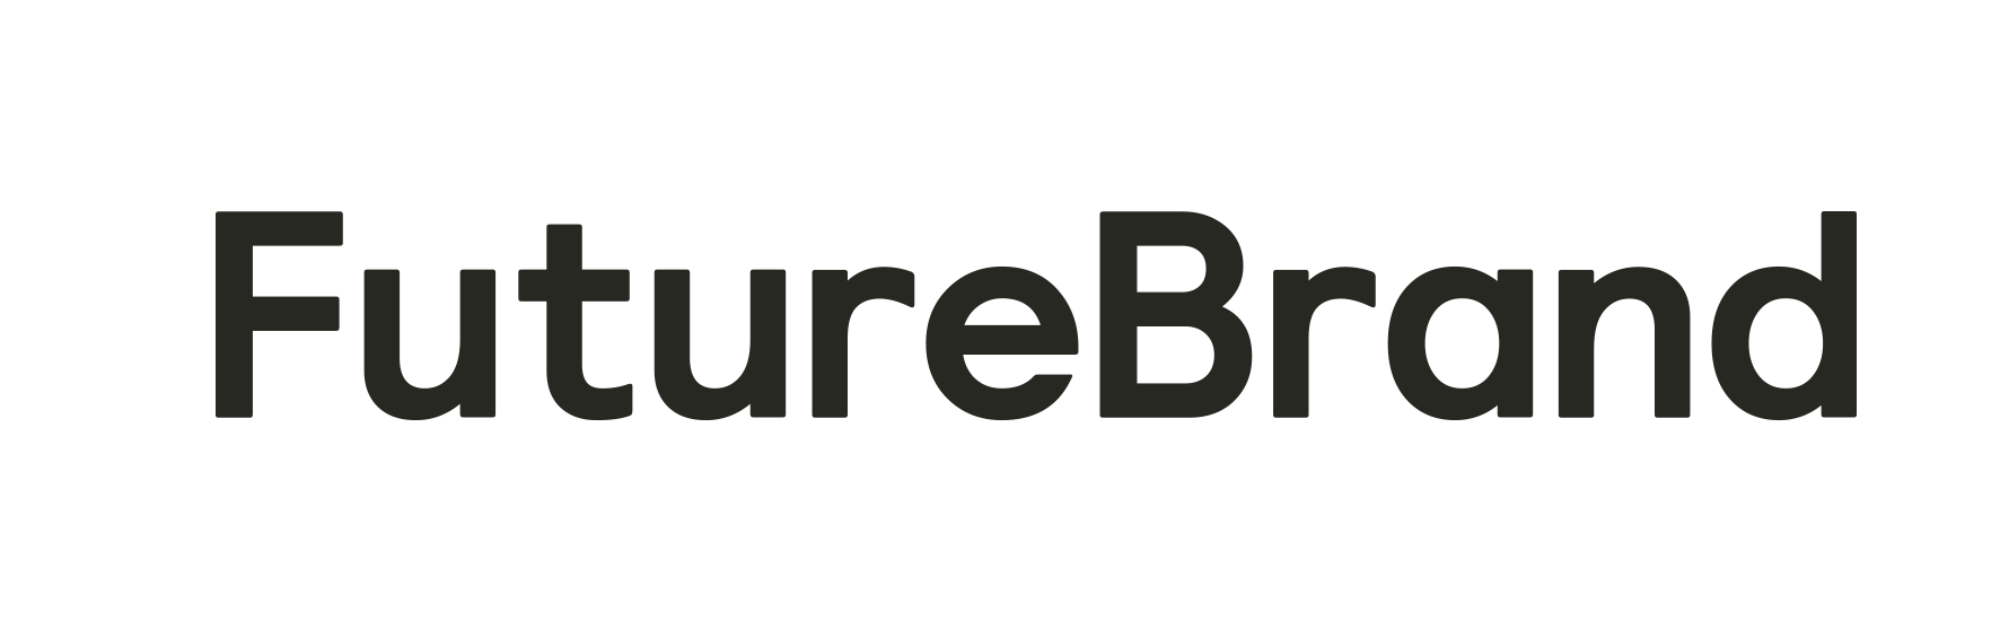 Black Brand Logo - FutureBrand: The Creative Future Company | FutureBrand